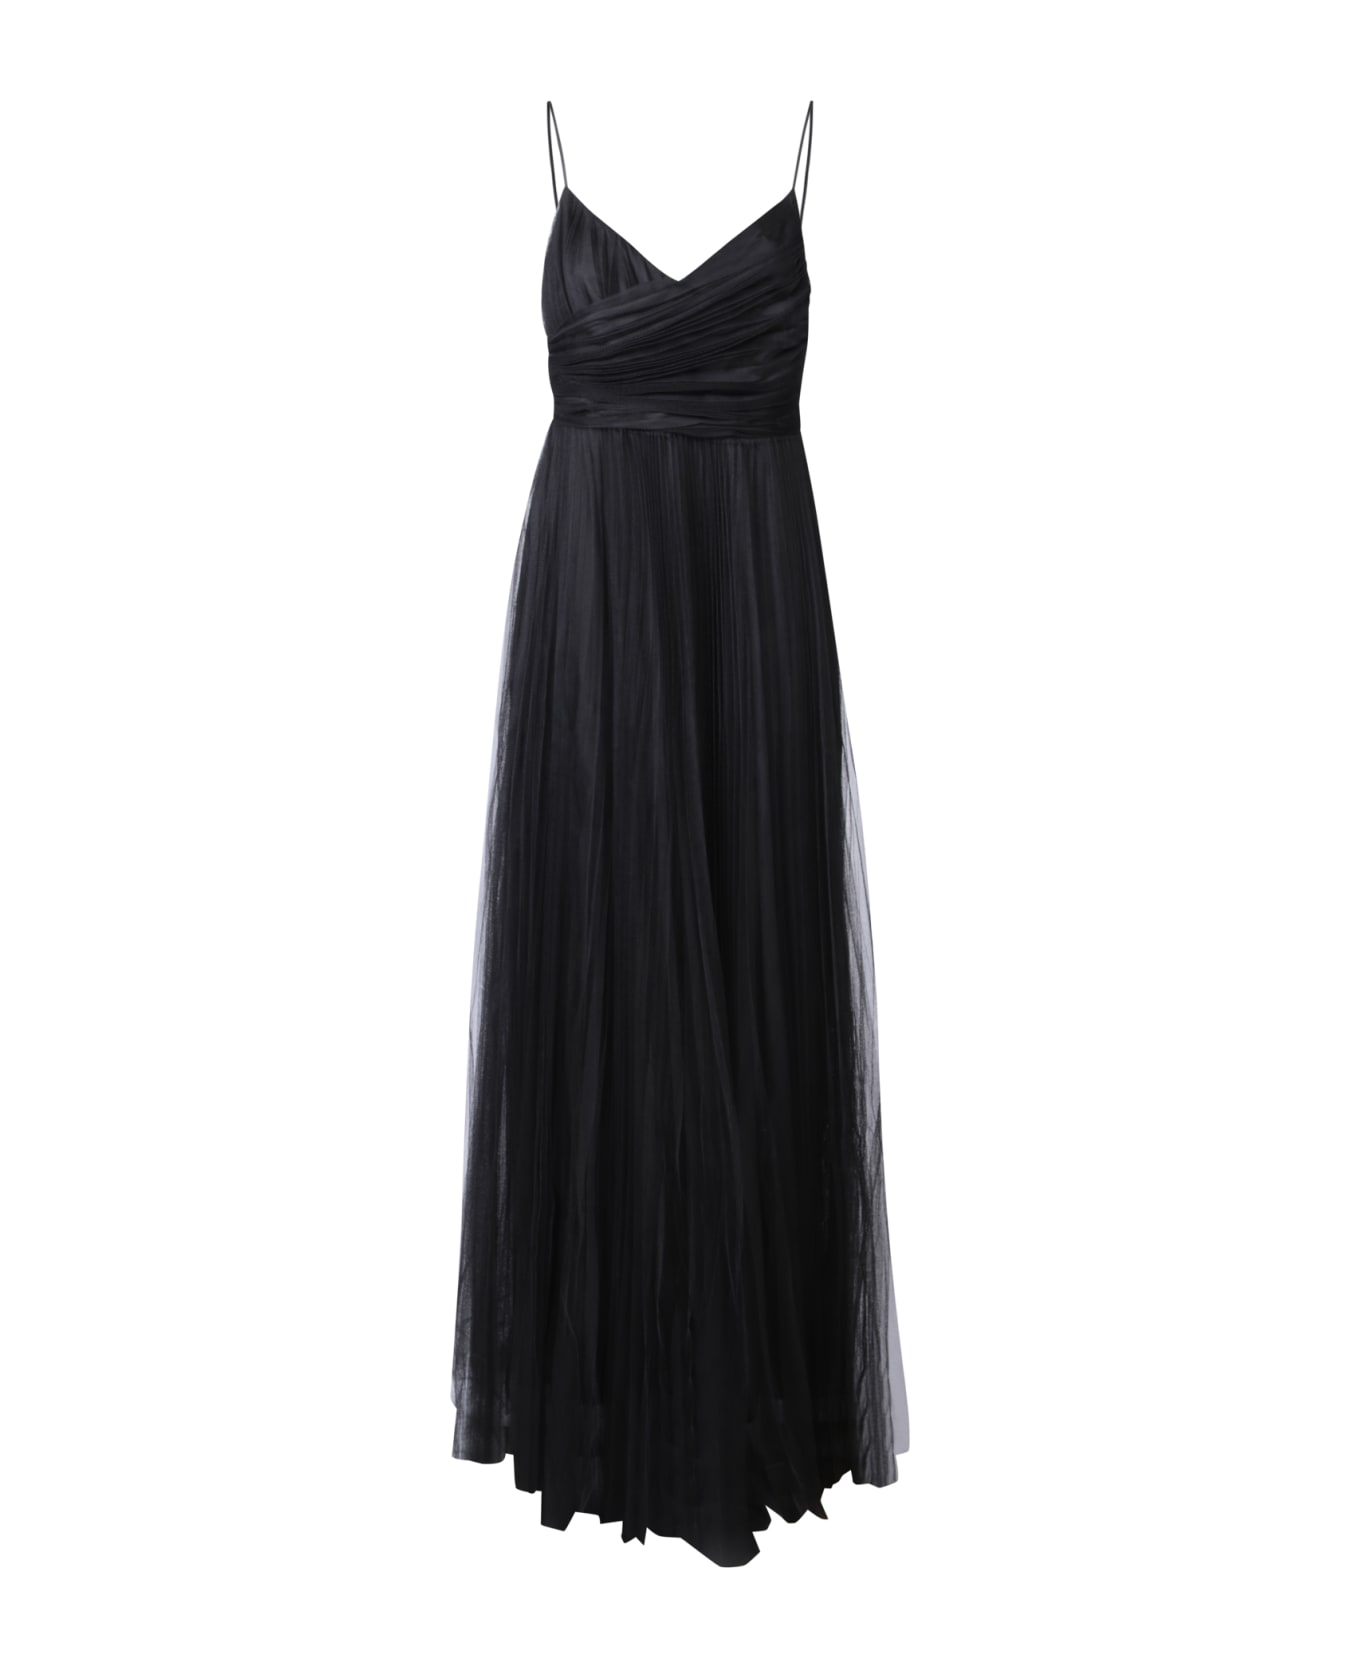 Fabiana Filippi Pleated Tulle Long Black Dress By Fabiana Filippi - Black